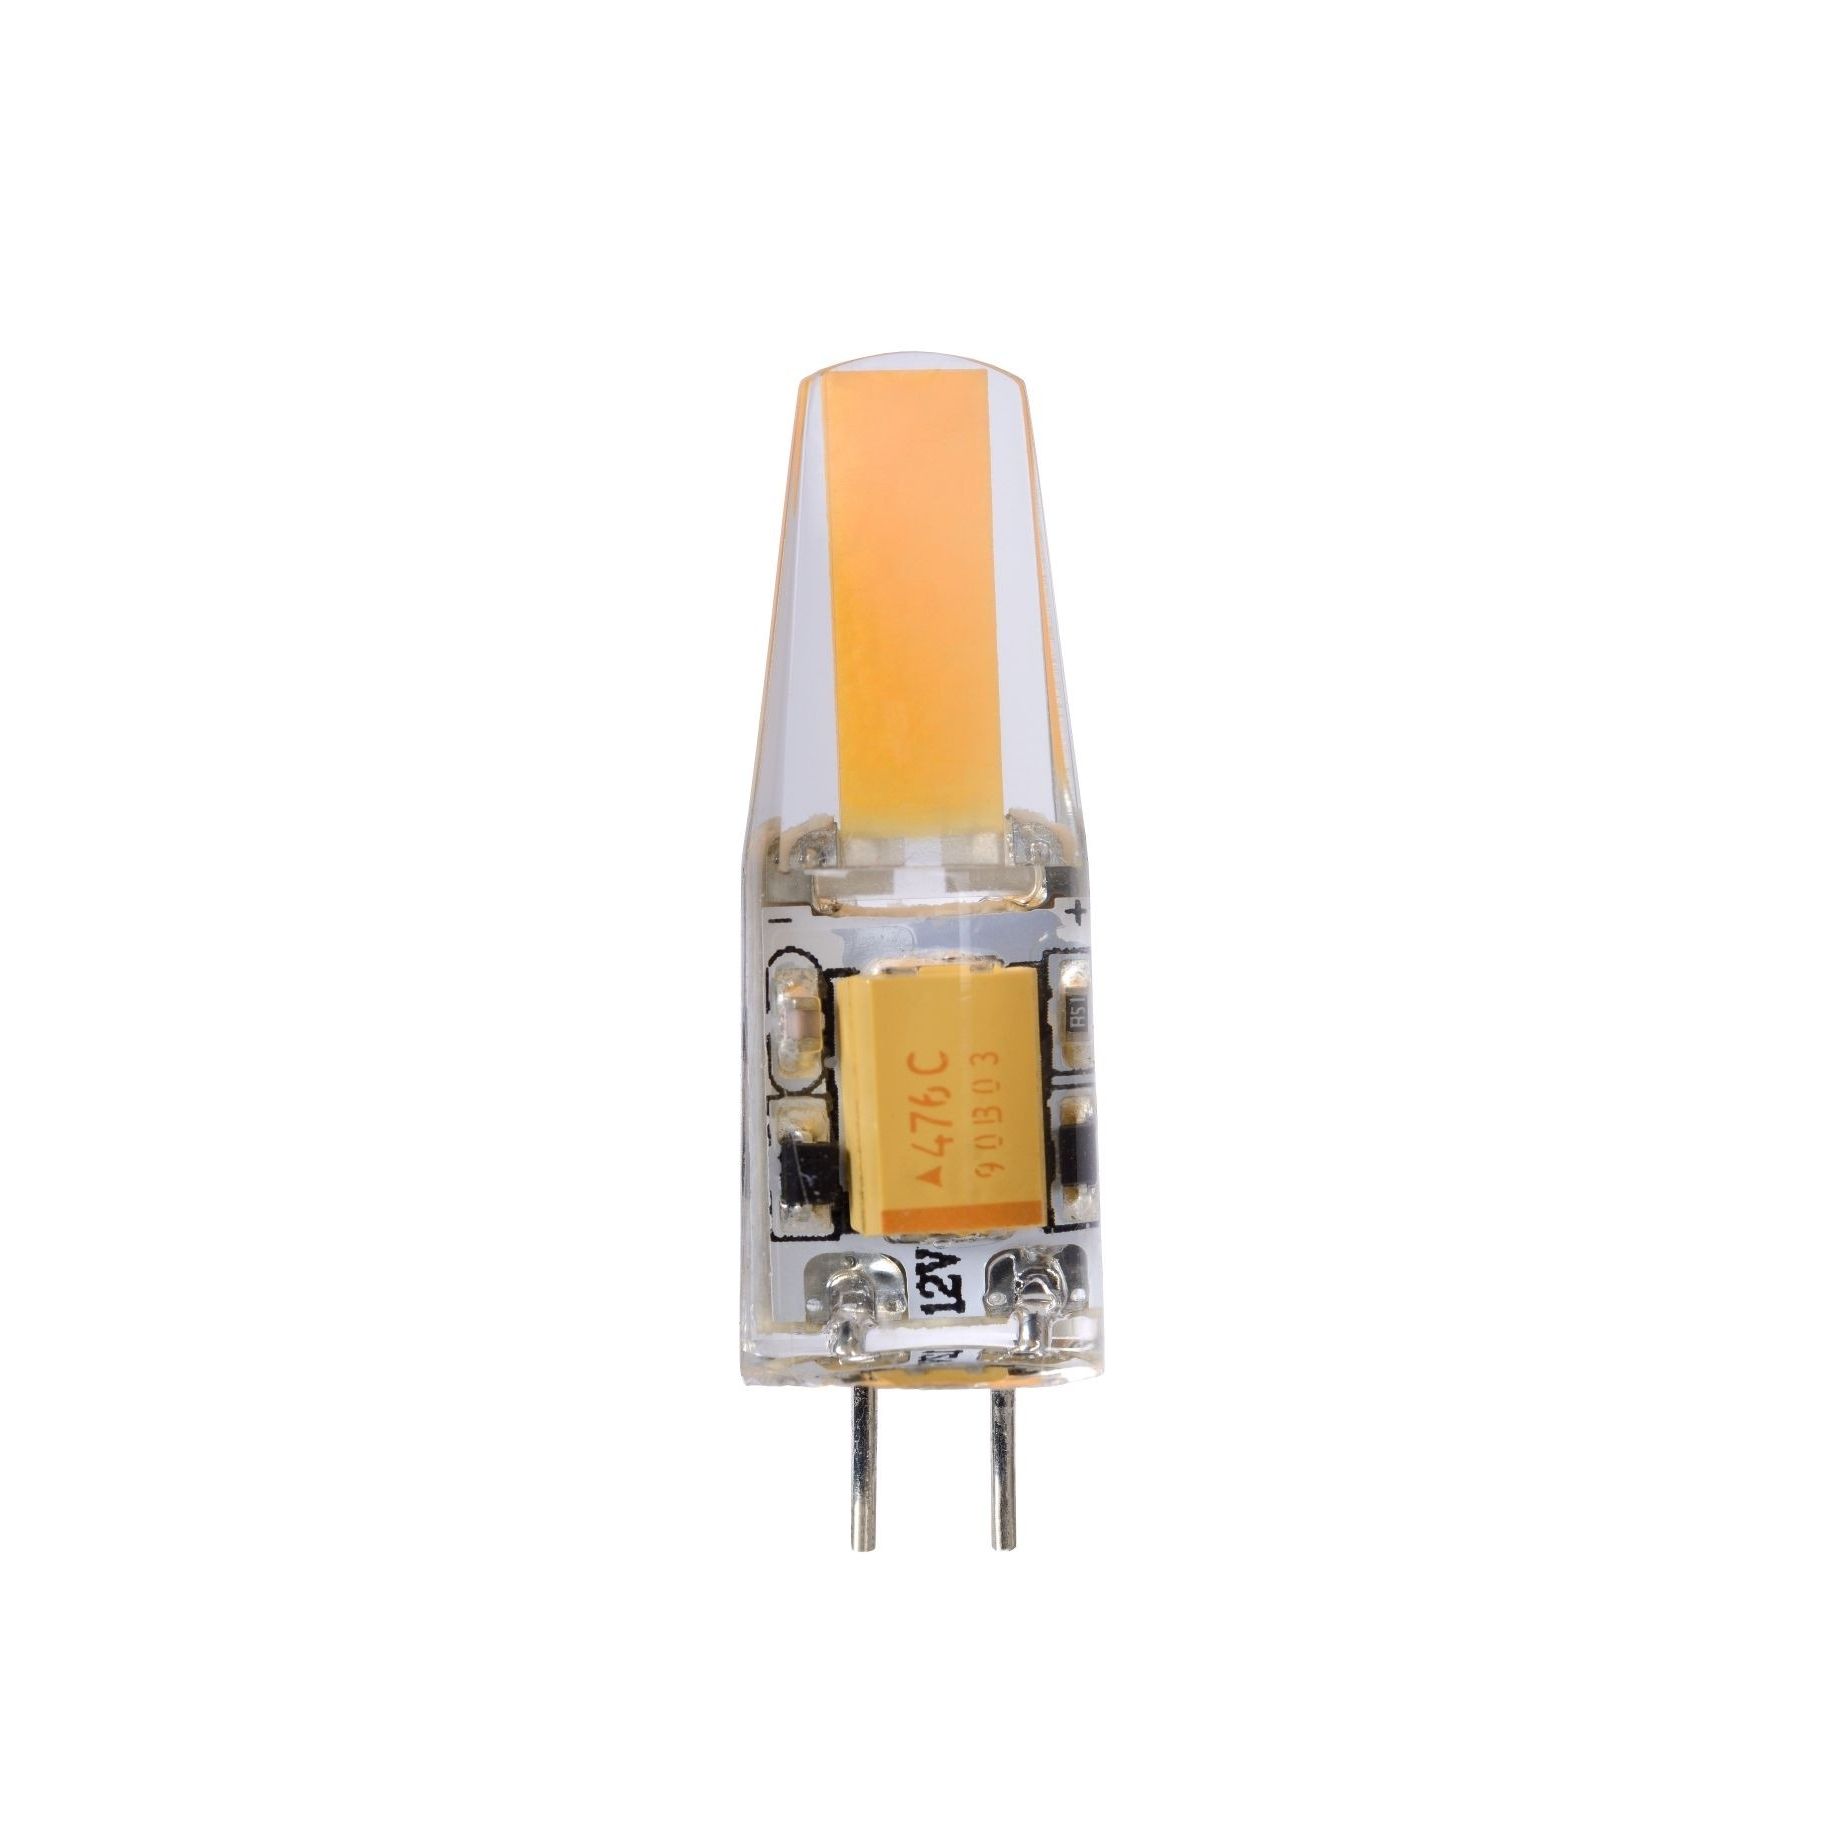 LED lamp - Ø 0,9 3,8 cm - G4 - 1,5W niet dimbaar - 2700K - wit | Lichtkoning